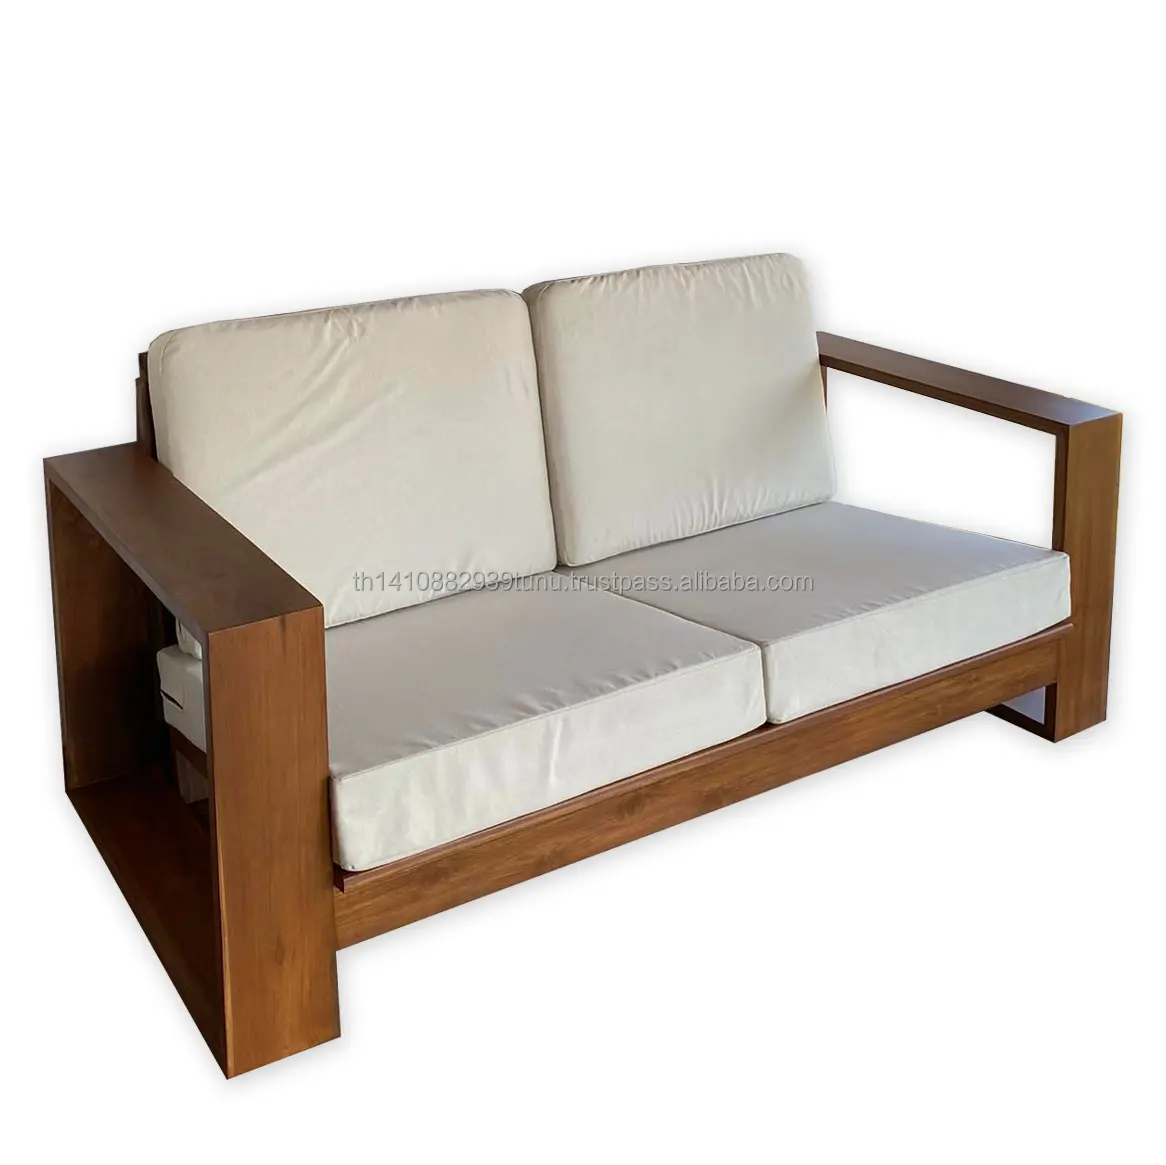 Marco de sofá de madera de teca sólida, diseño moderno de alta calidad, con cubierta de lona de algodón, muebles para el hogar